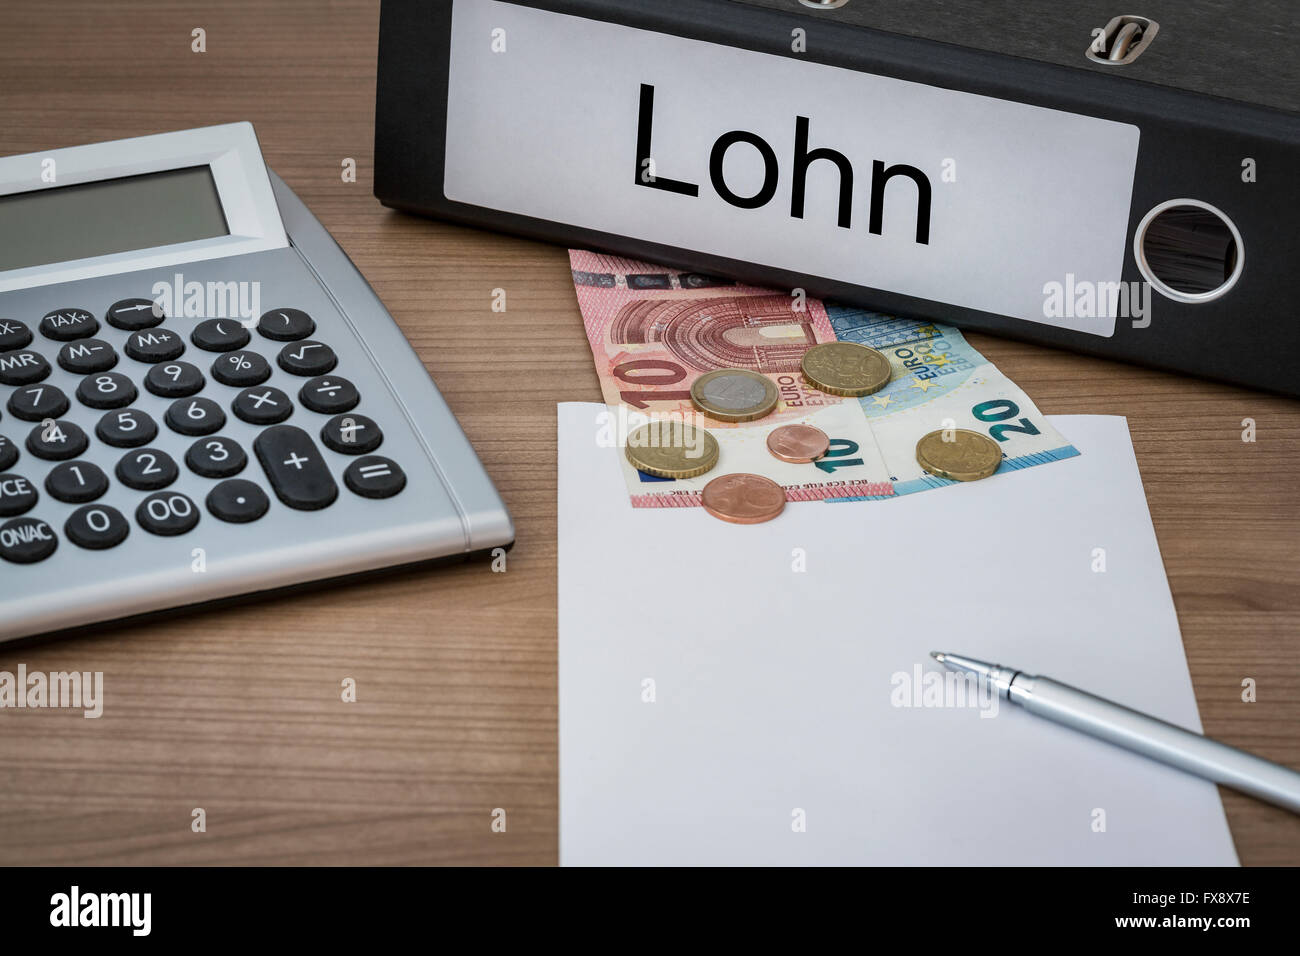 Lohn (tedesco salari) scritto su un legante su un banco con denaro euro calcolatrice foglio bianco e penna Foto Stock